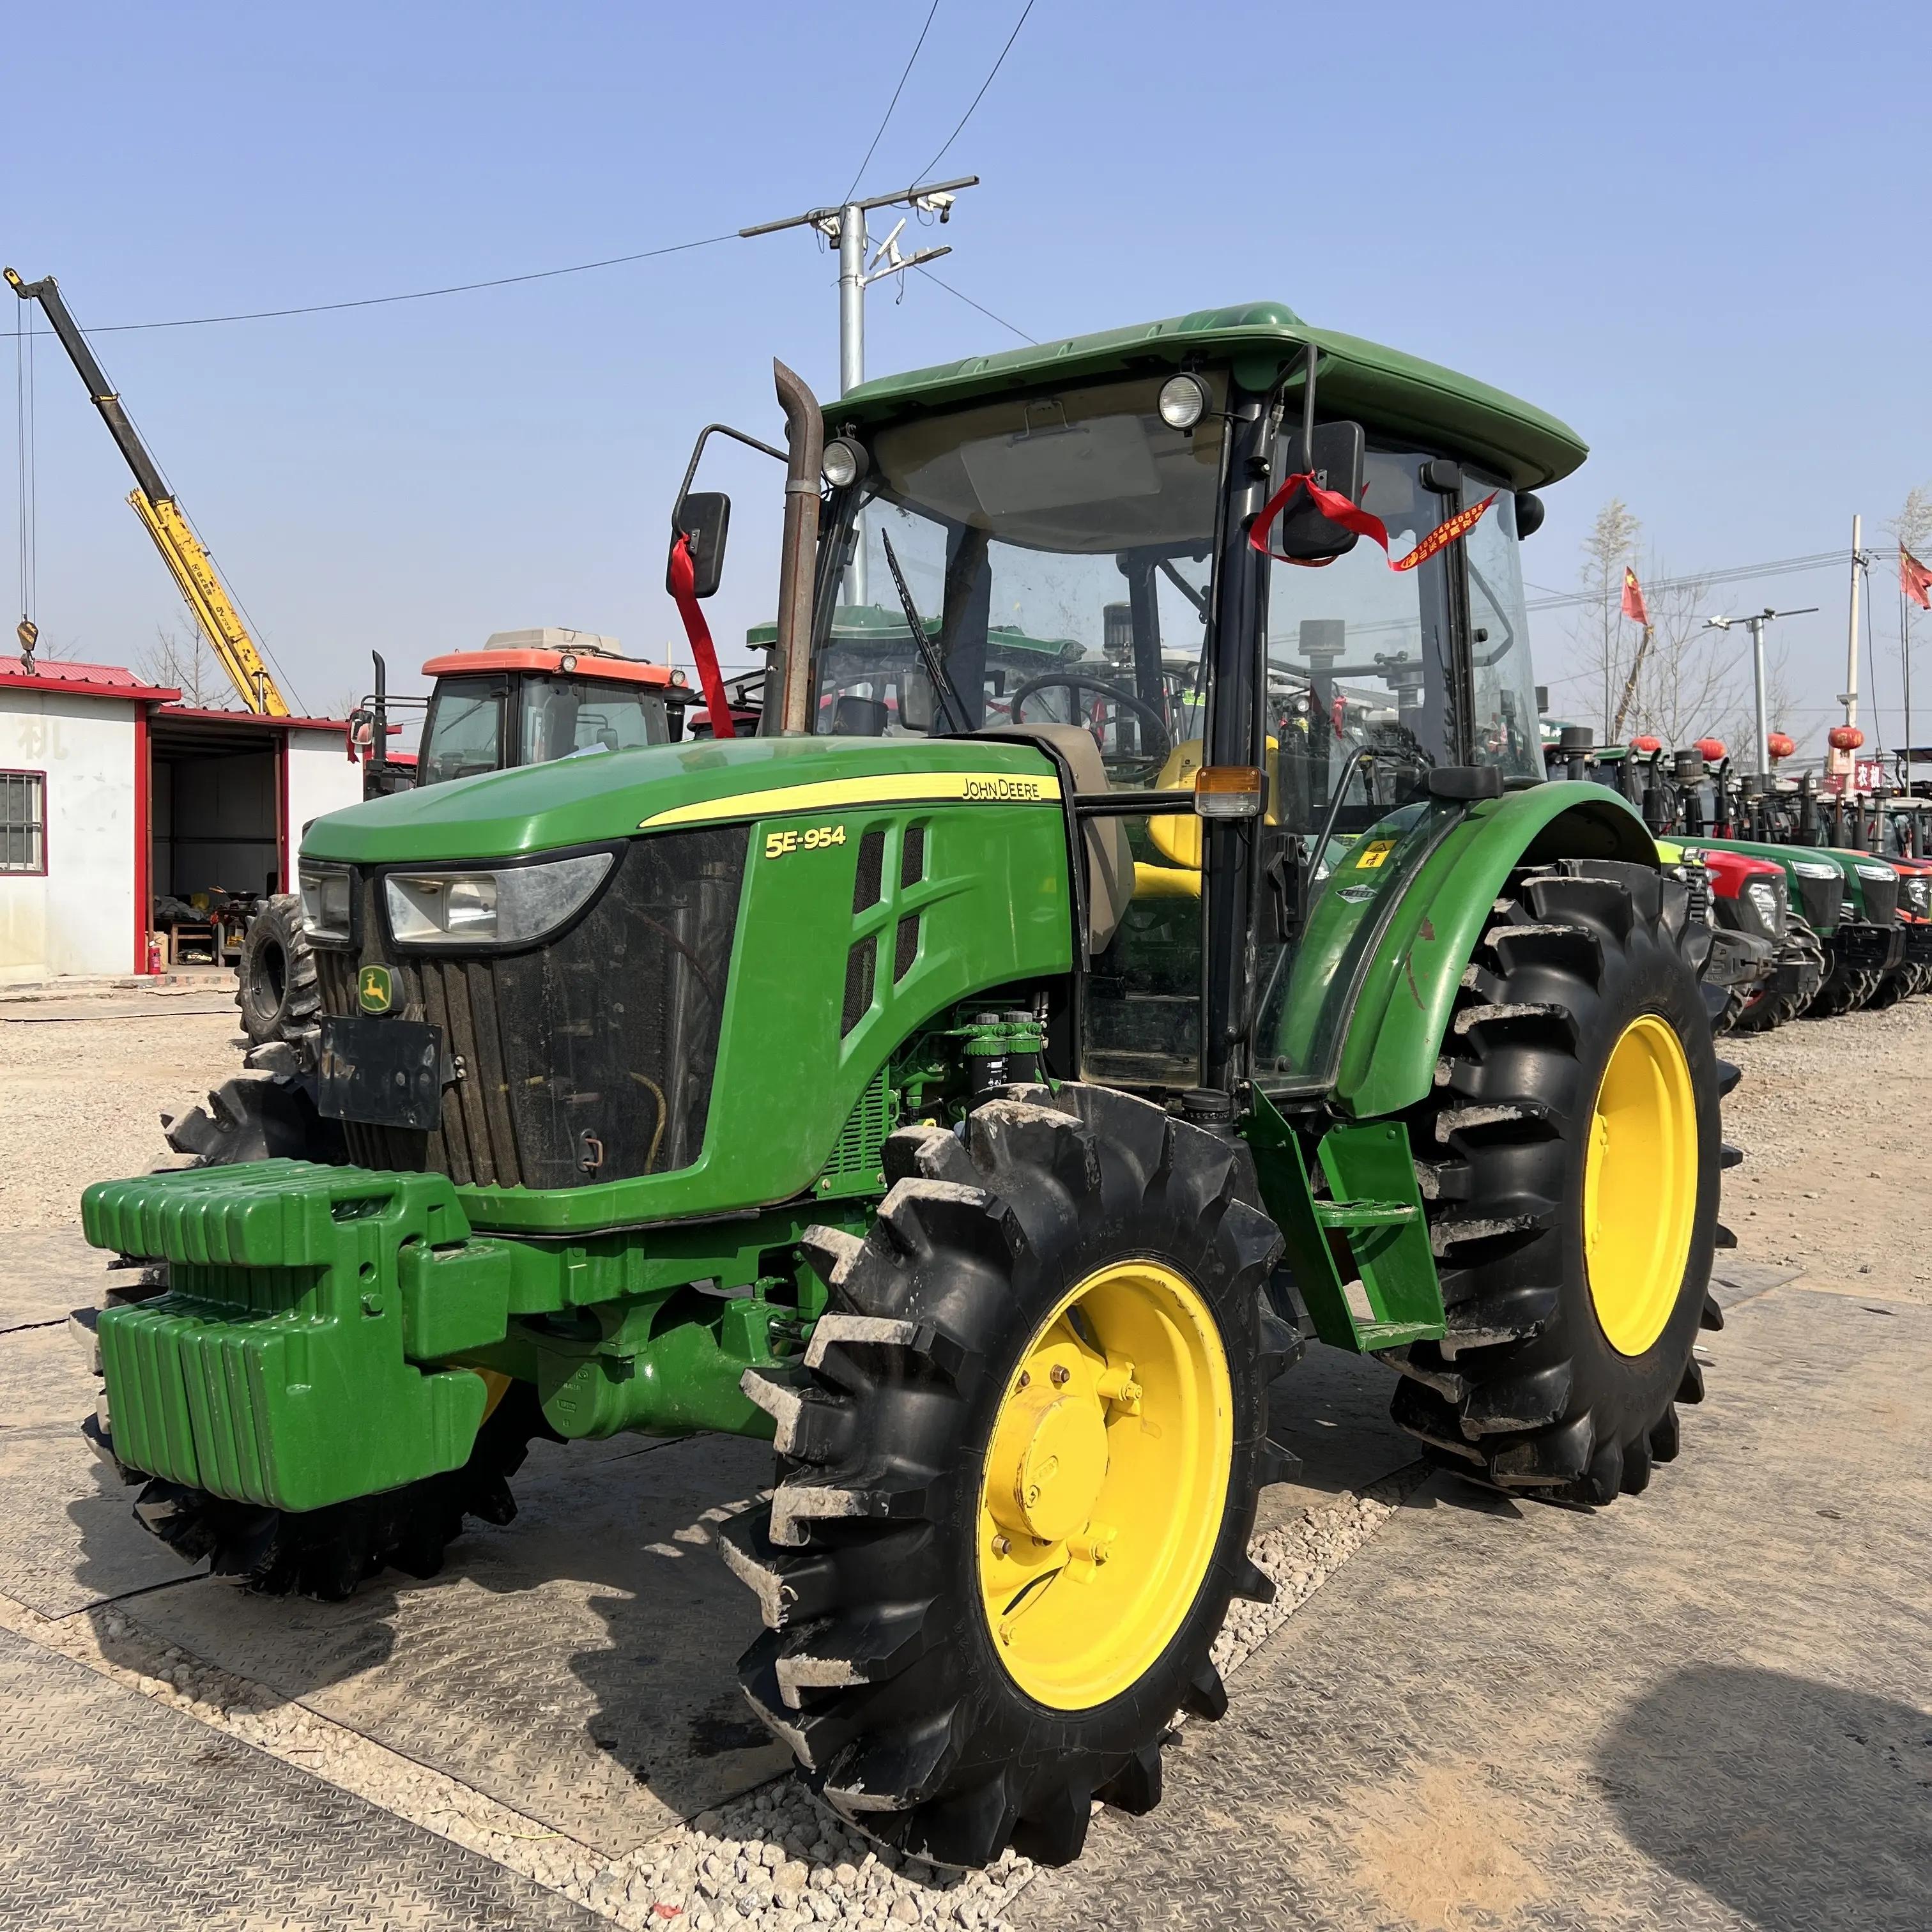 Tractor usado 5e-954 JOHN DEERE, con neumáticos para arroz, 95HP Tractor agrícola, maquinaria agrícola con cabina de buena calidad para Sa